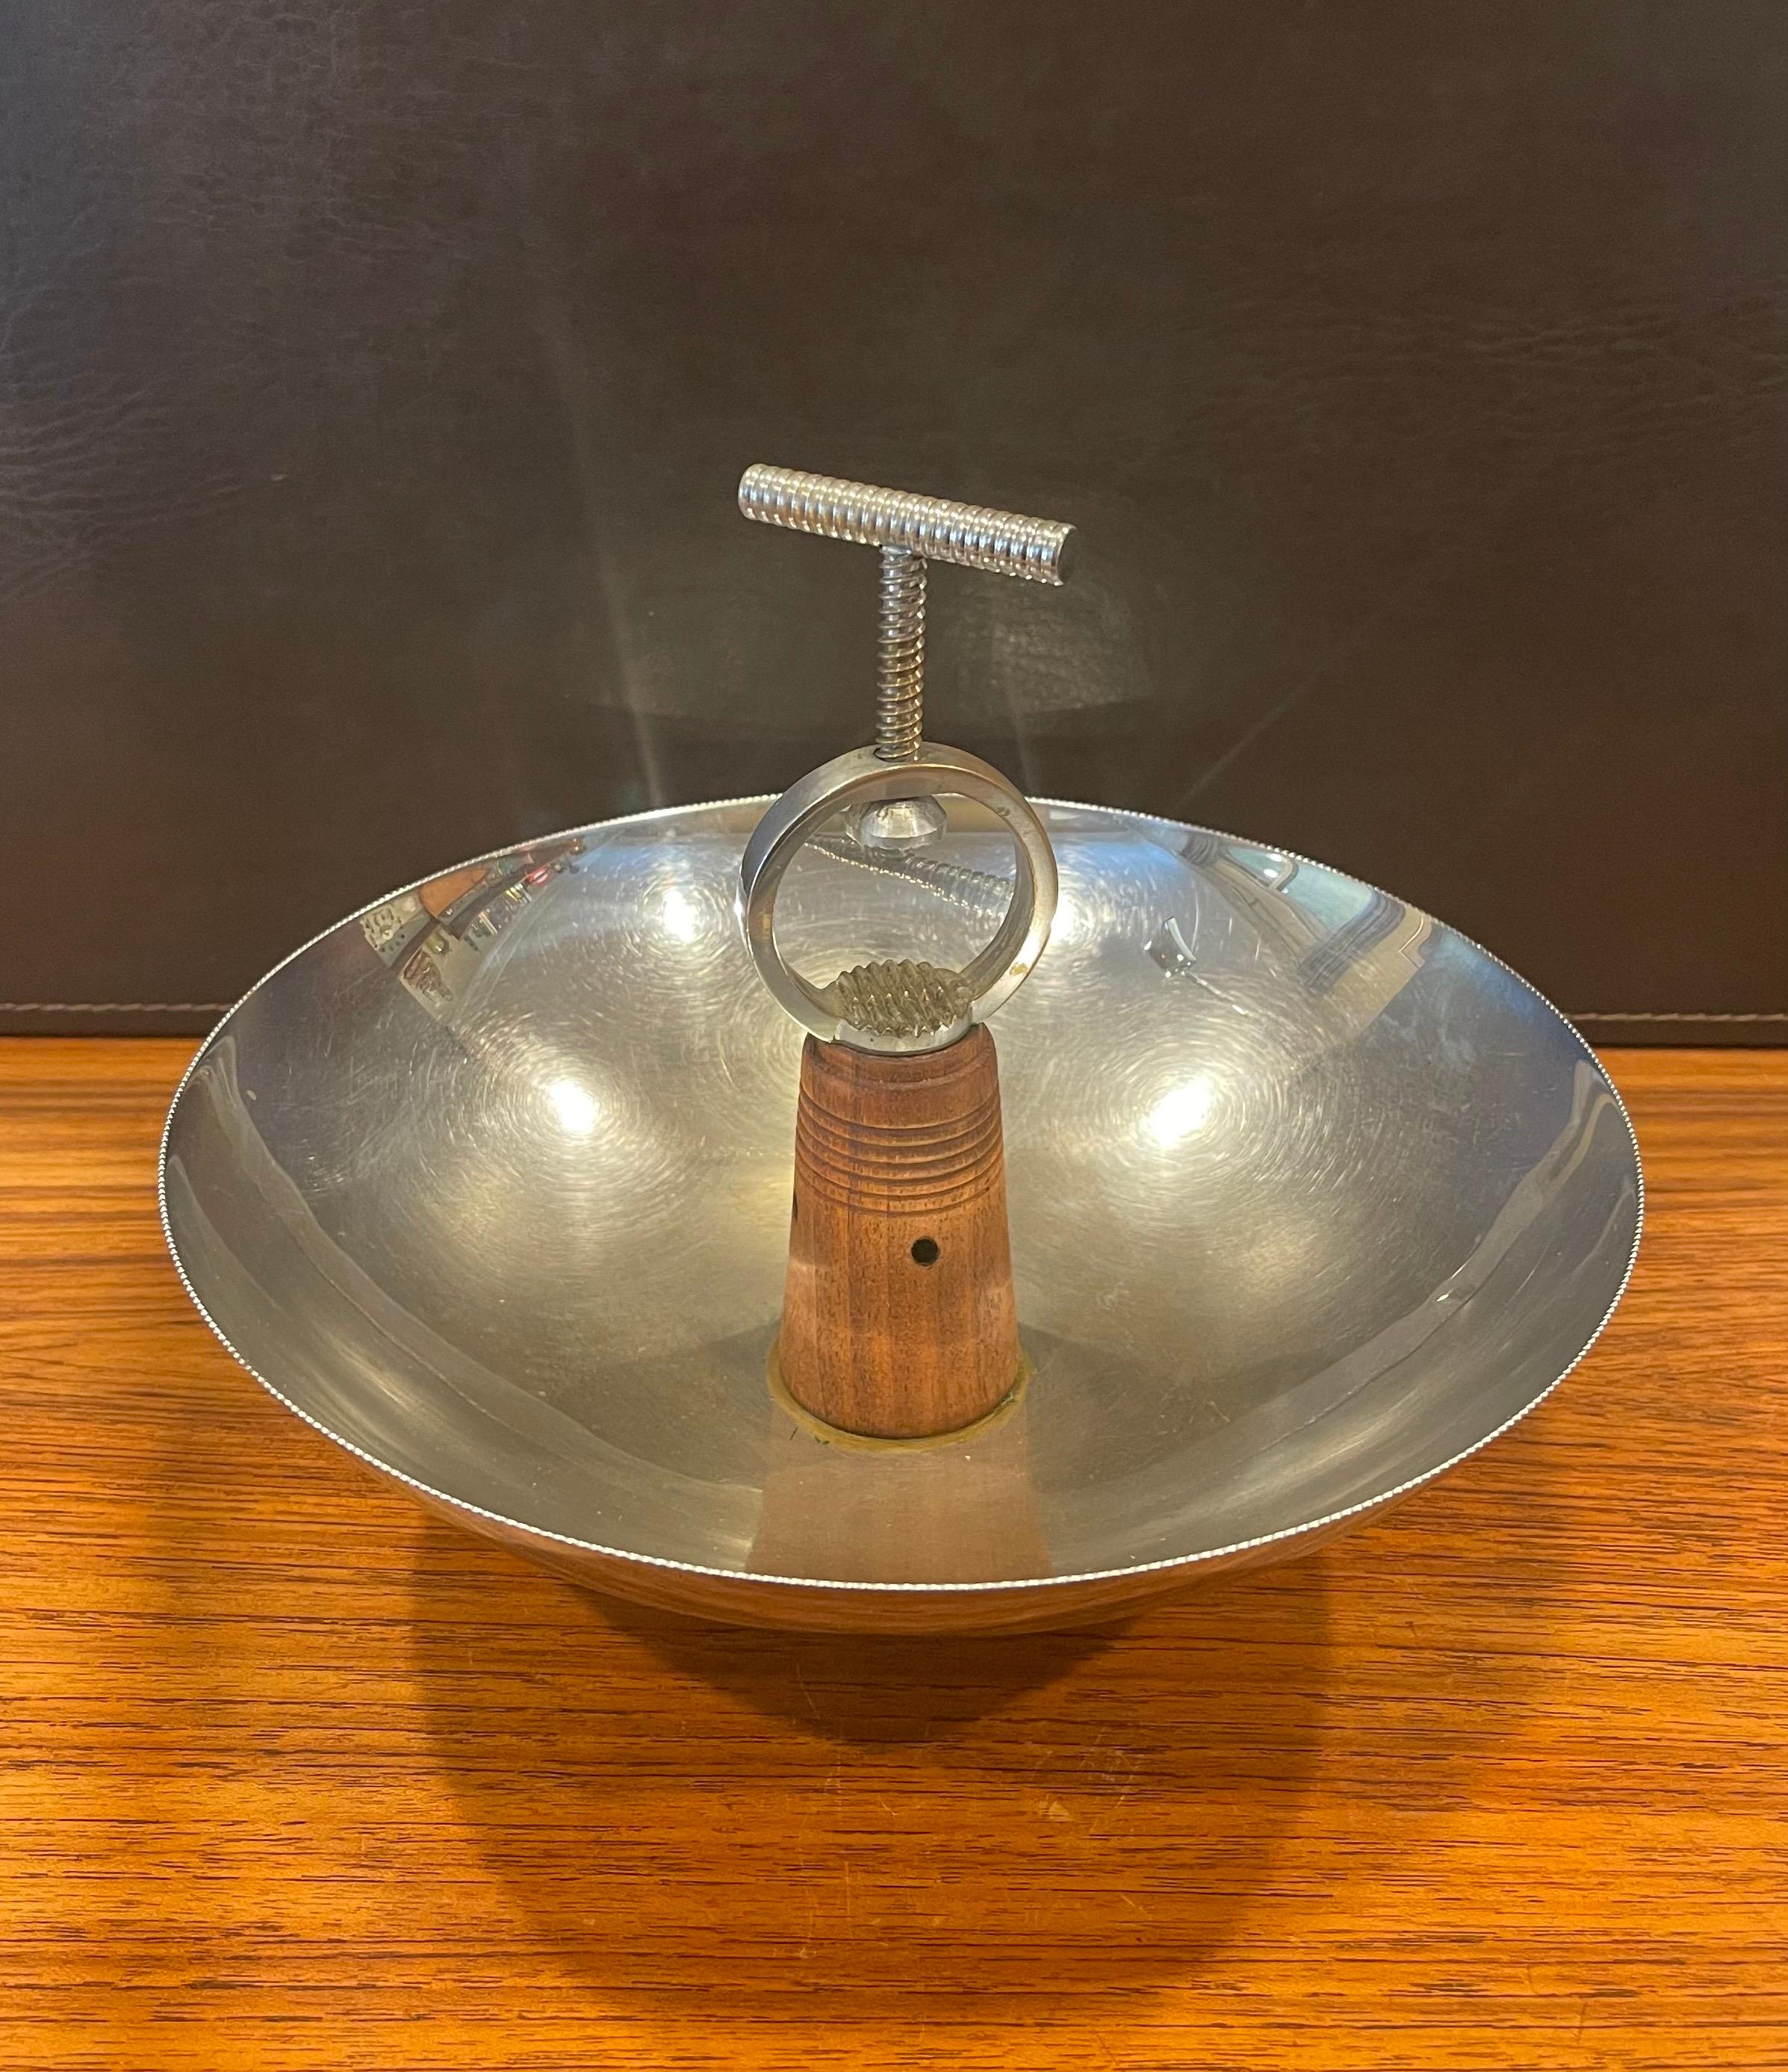 Un bol à noix chromé Art Déco très difficile à trouver avec un casse vis intégré par Chase & Co, vers 1930. Le design comprend une base et une tige en noyer massif supportant un bol rond chromé et un craqueur à vis manuelle en métal. La pièce est en